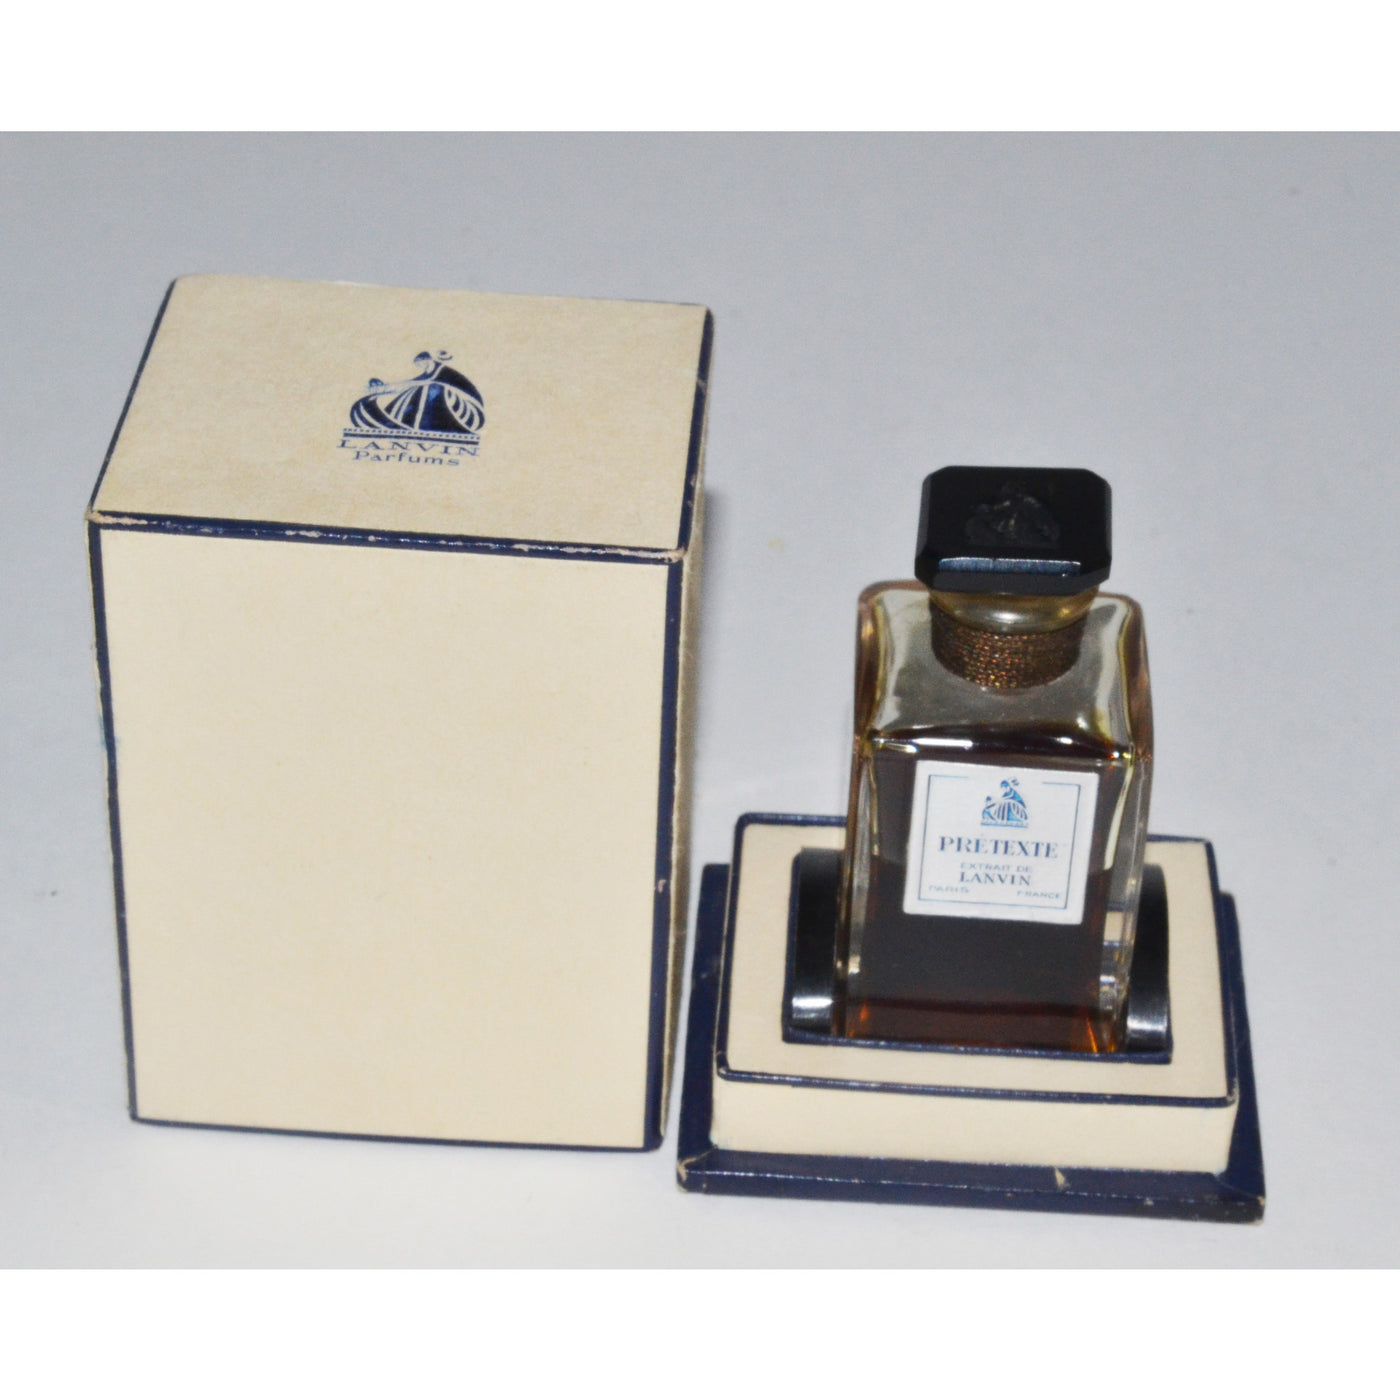 Vintage Pretexte Extrait Perfume By Lanvin